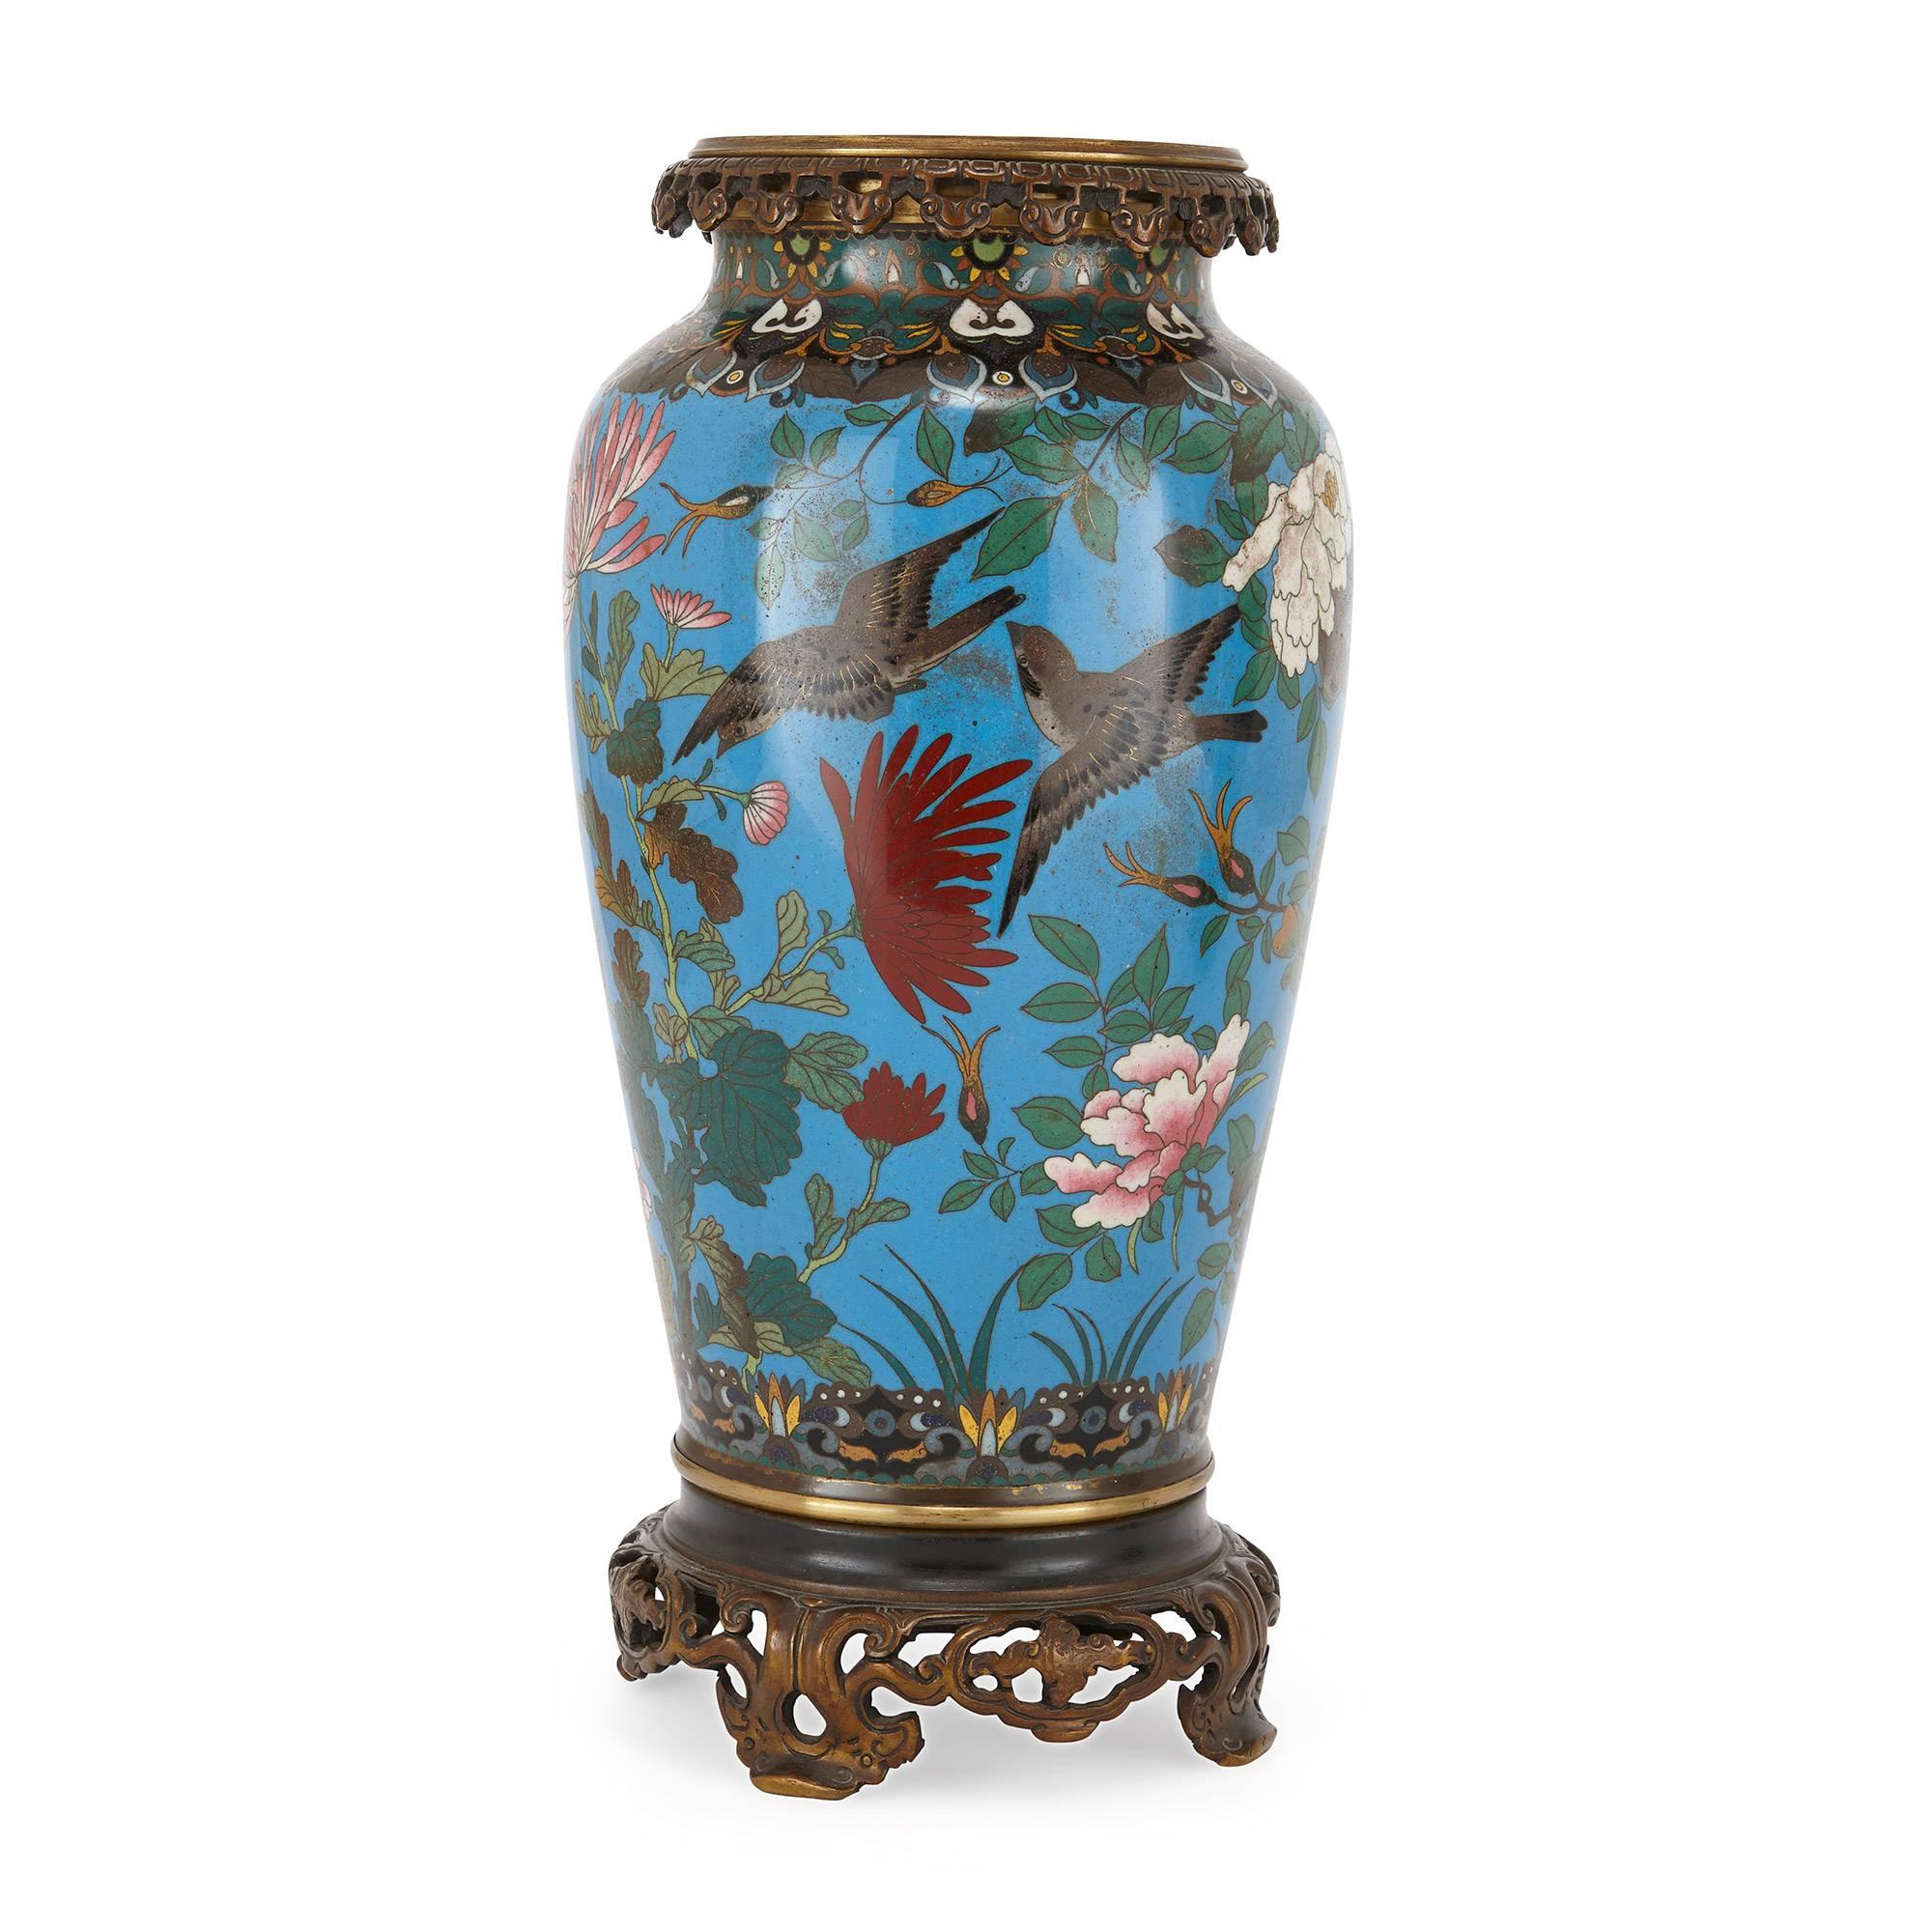 De forme ovoïde avec un bord en bronze doré percé, décoré d'oiseaux, de fleurs et de feuillages, reposant sur des pieds en bronze doré percés ; l'émail est japonais, le bronze doré français, fin du XIXe siècle.

Ces vases japonais exquis ont été